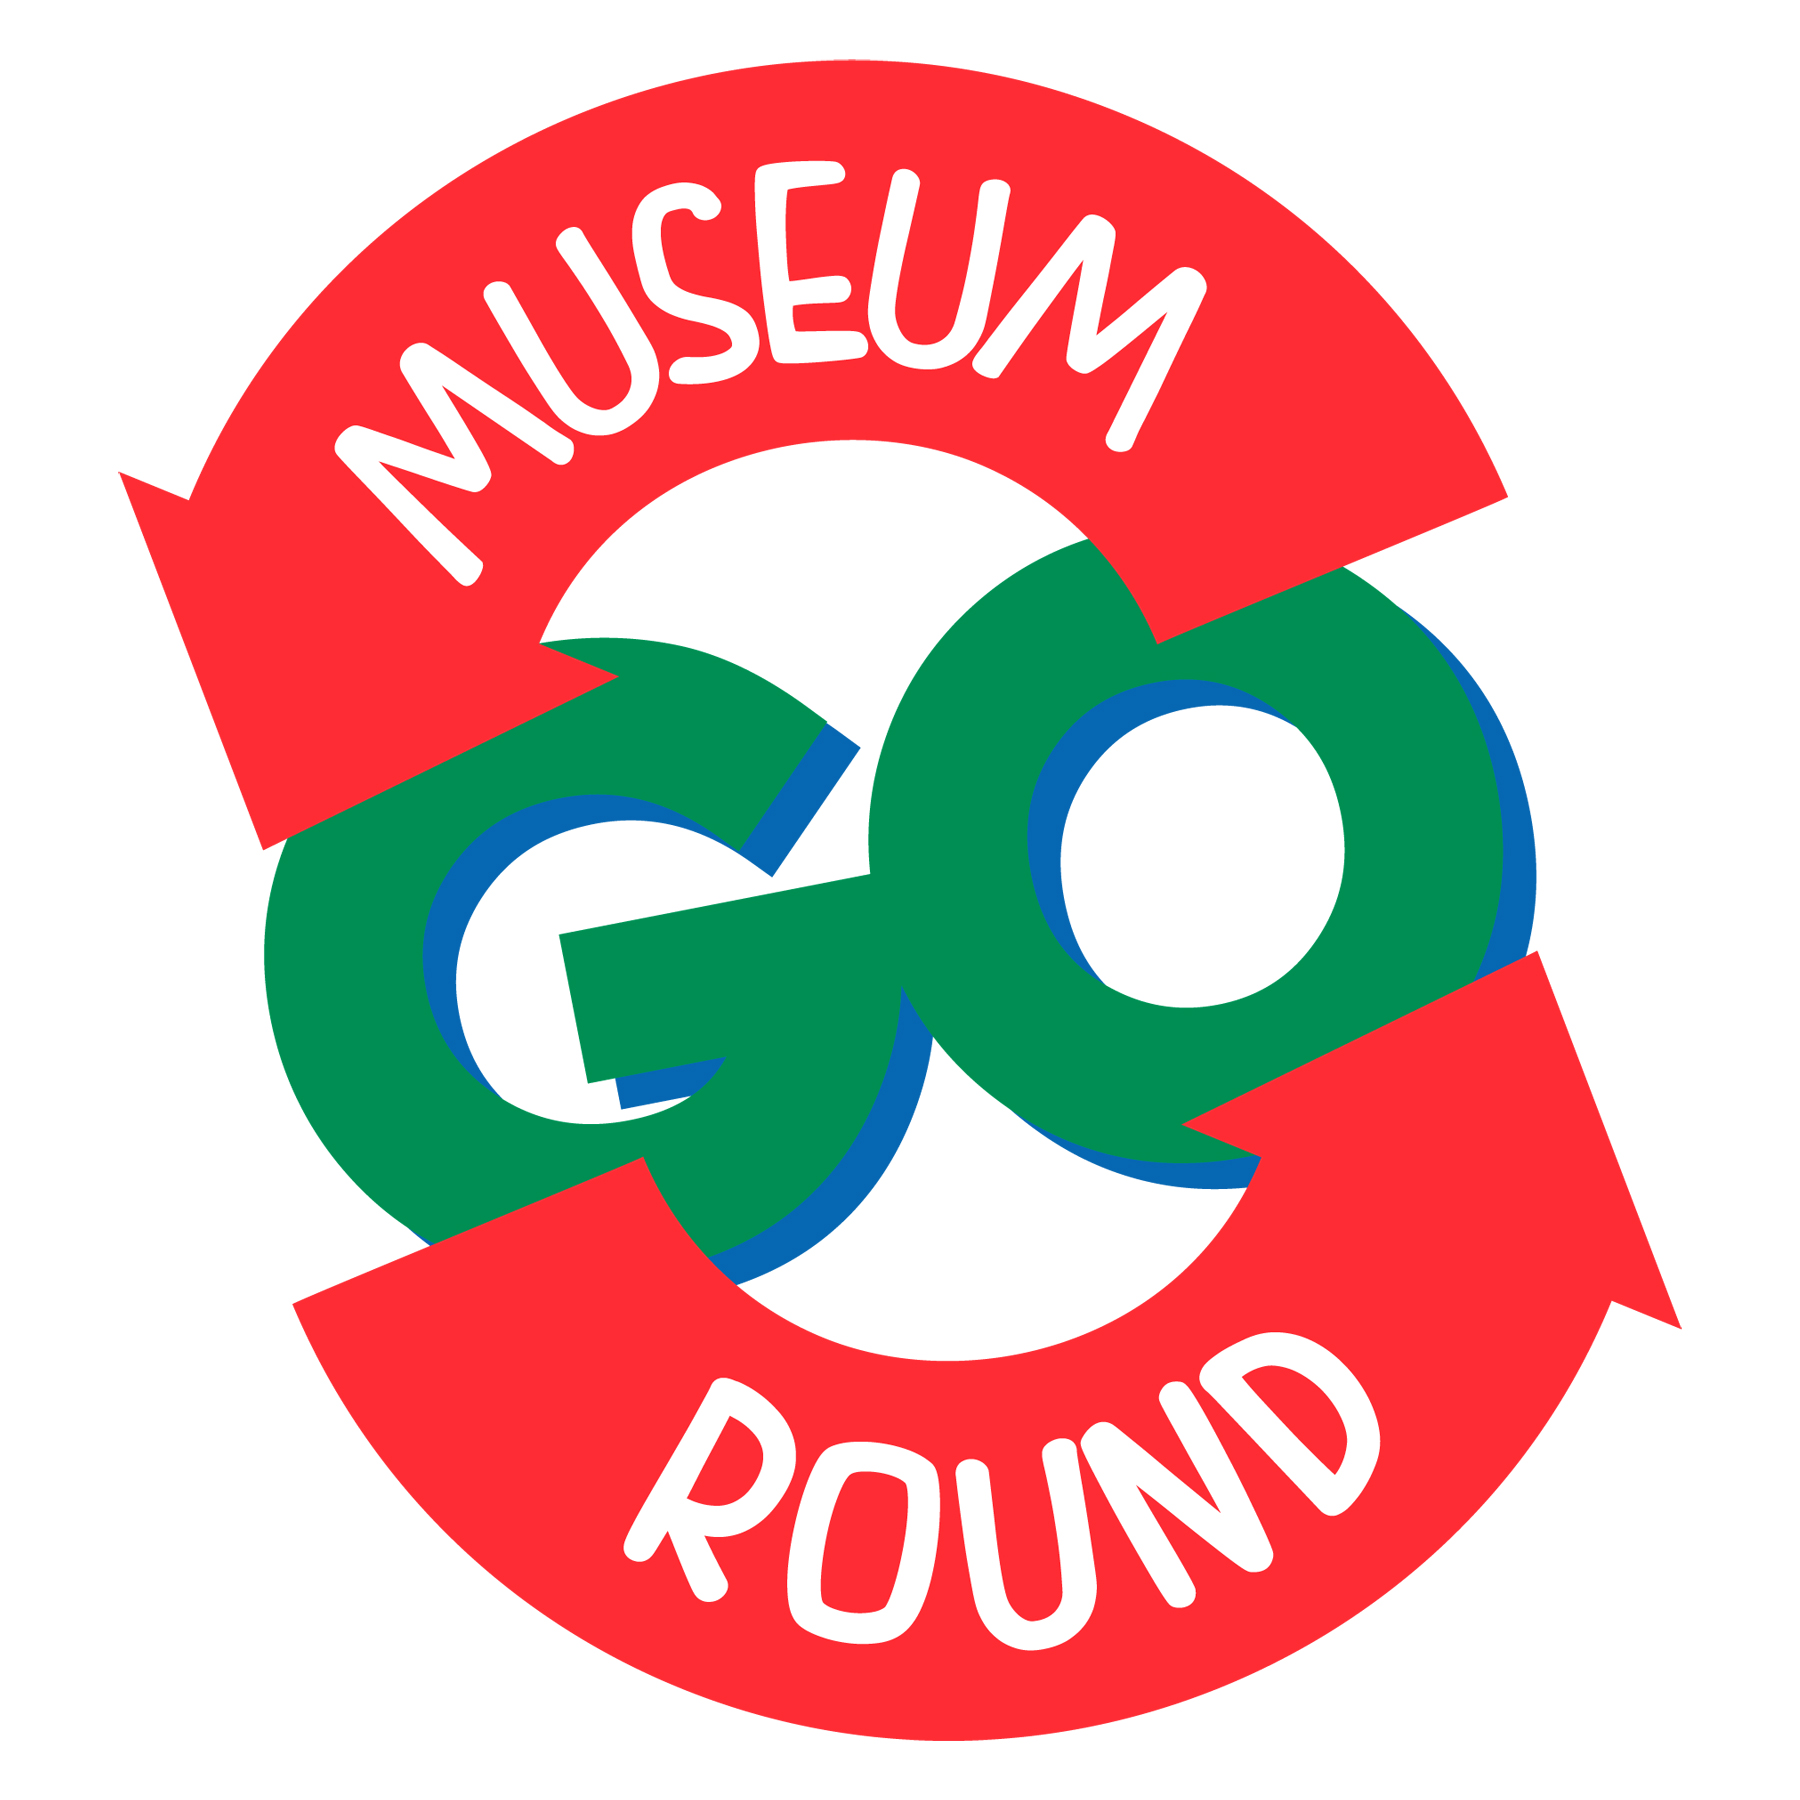 museum-go-round